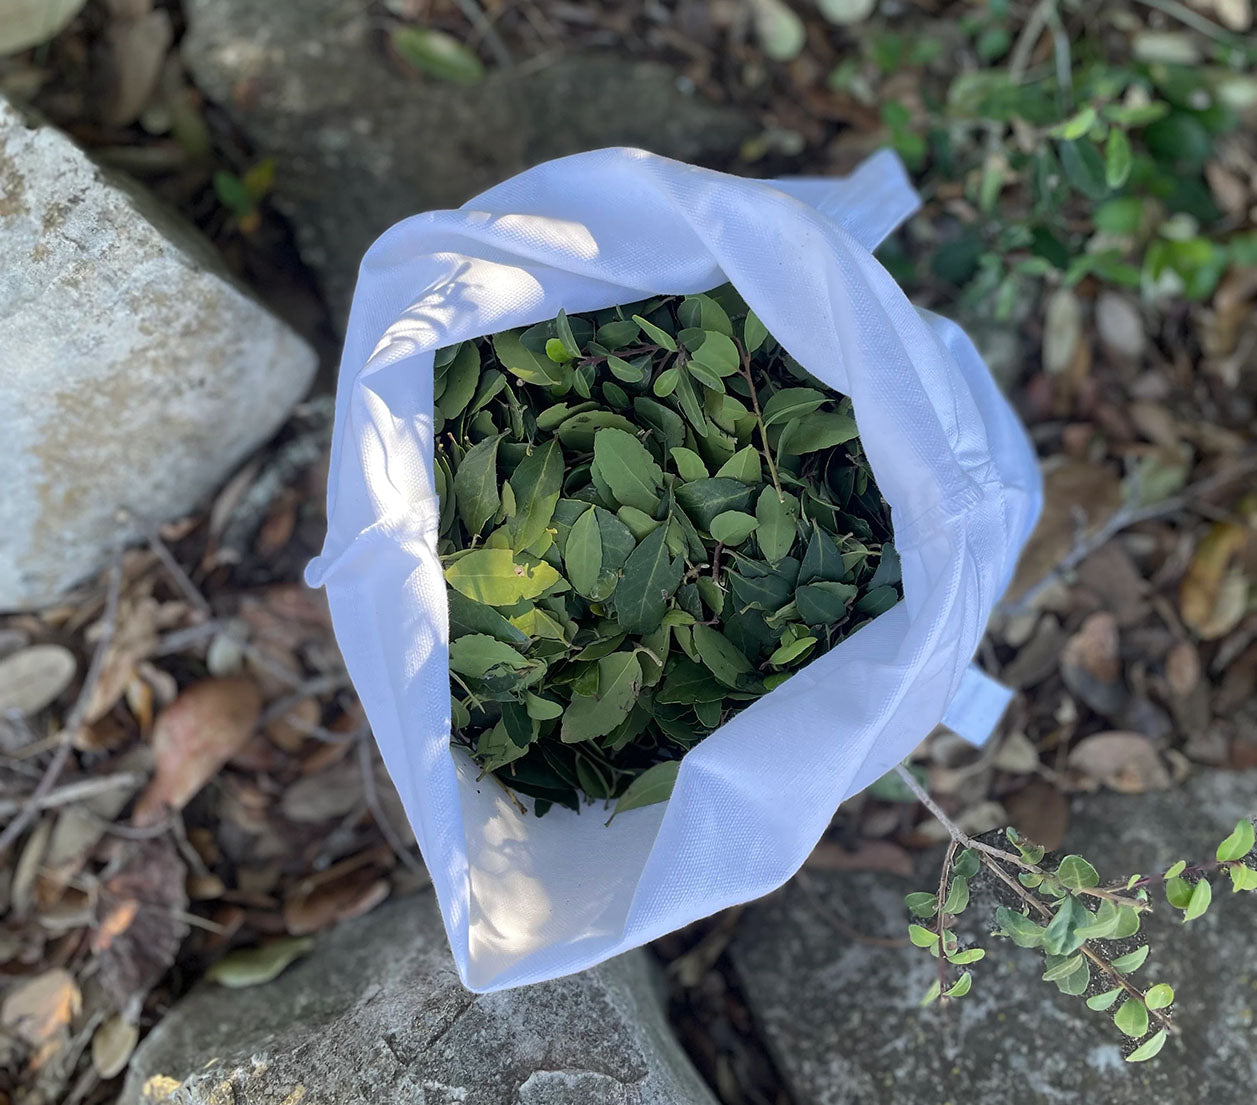 Loose Leaf Yaupon Tea